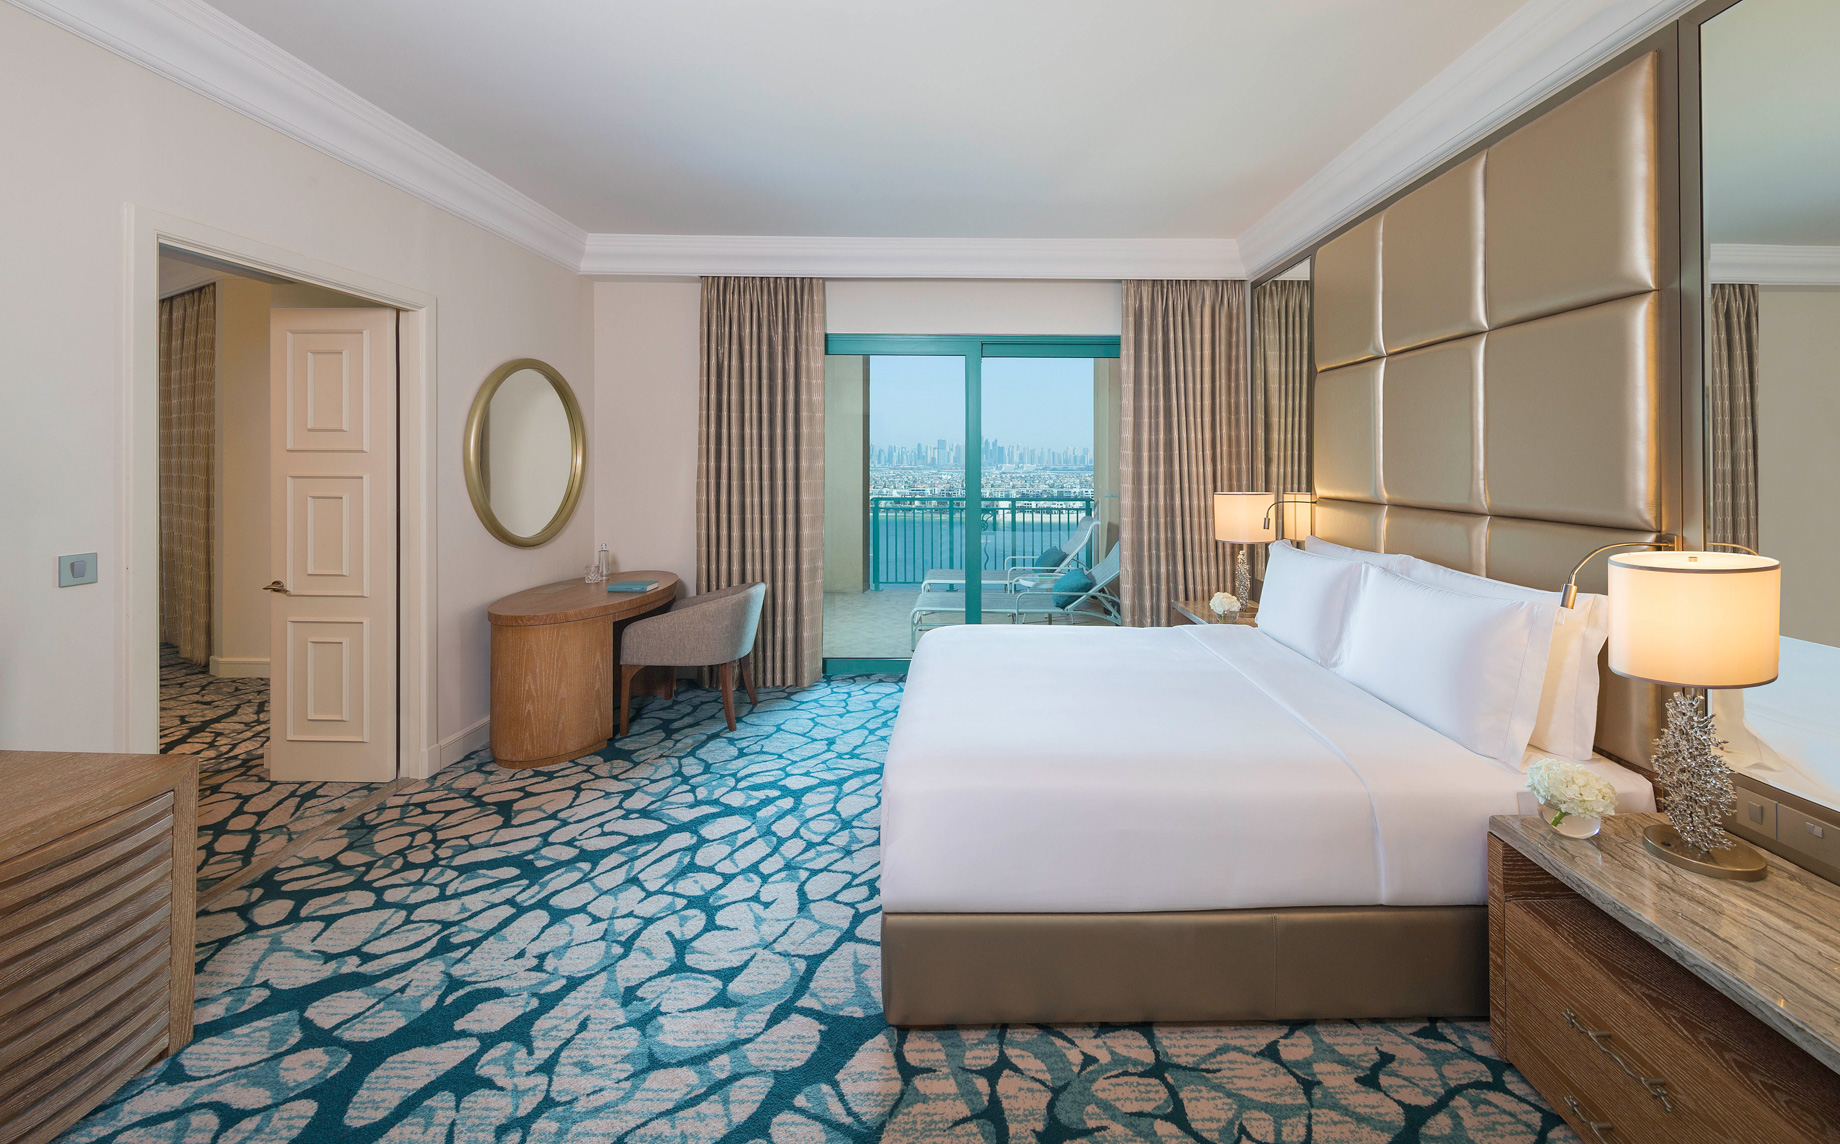 Atlantis The Palm Resort – Crescent Rd, Dubai, UAE – Terrace Club Suite Bedroom